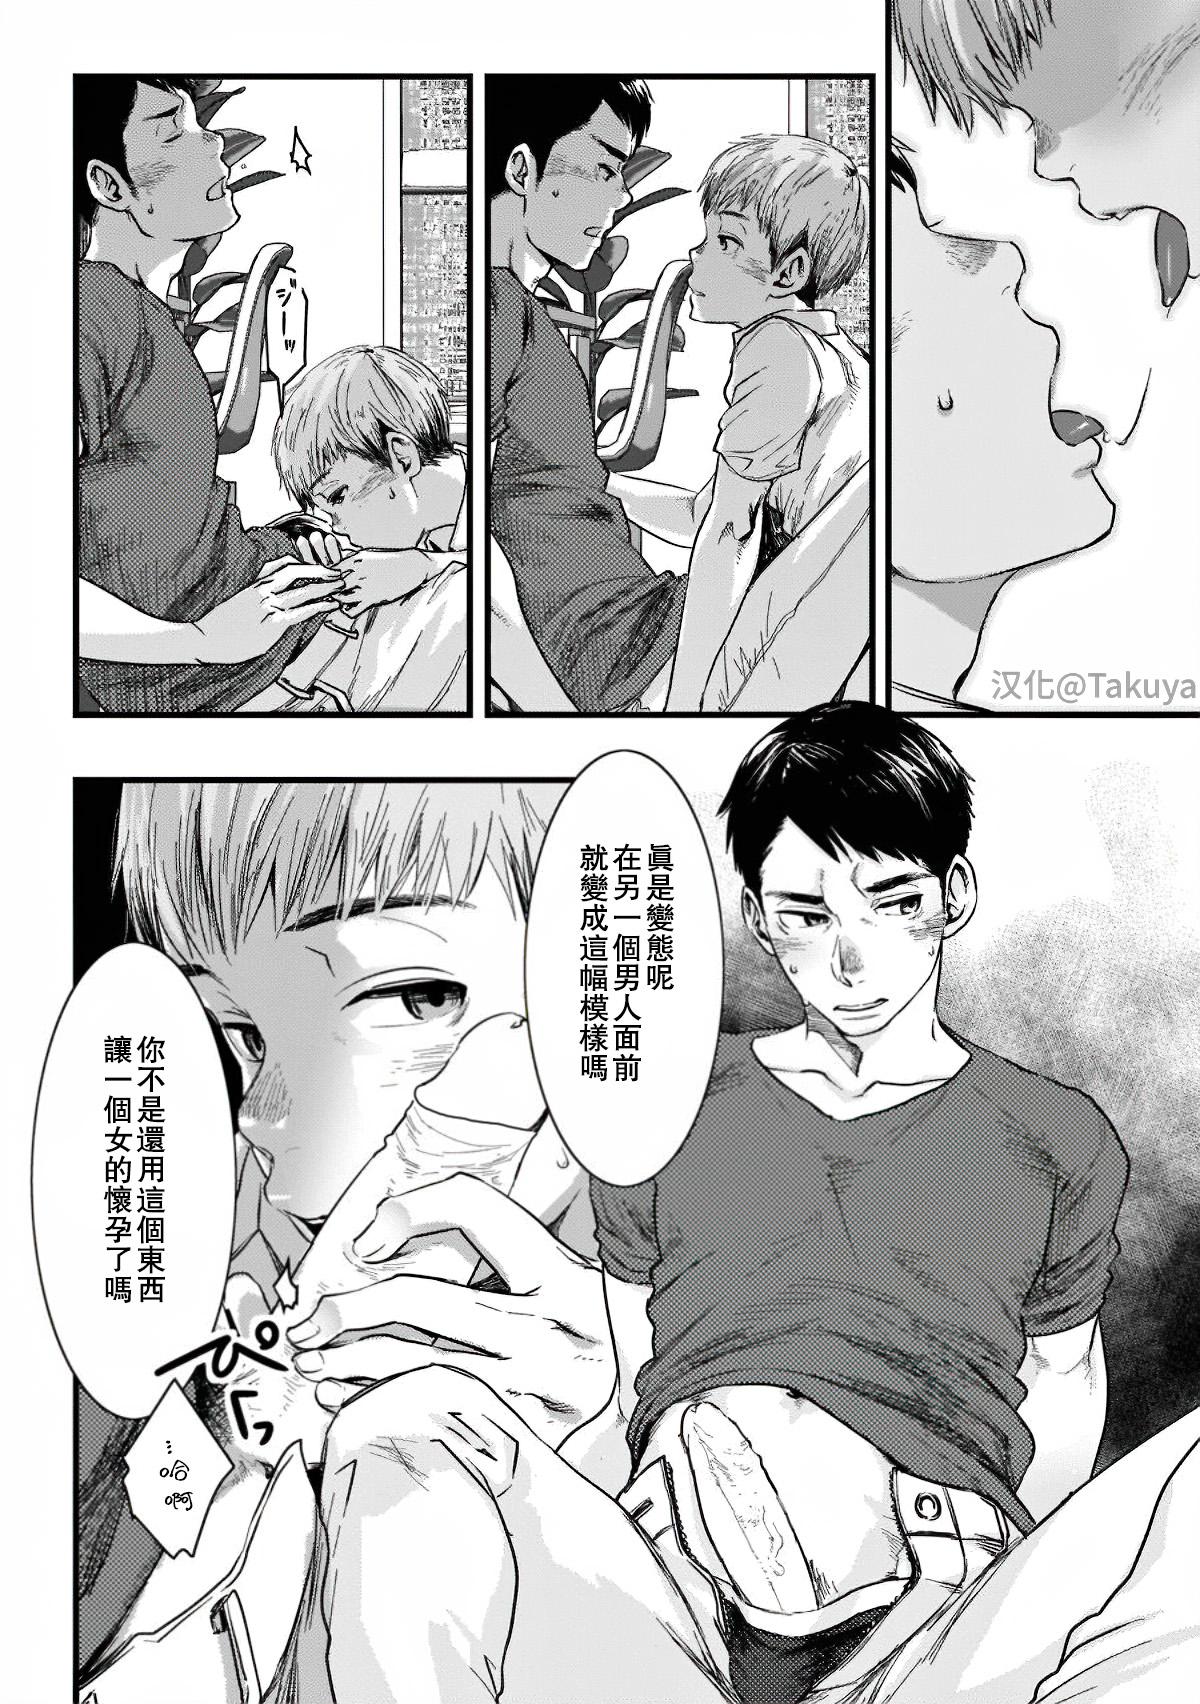 Funny Itai no wa Kokoro desu | 心之所痛 Dicksucking - Page 8